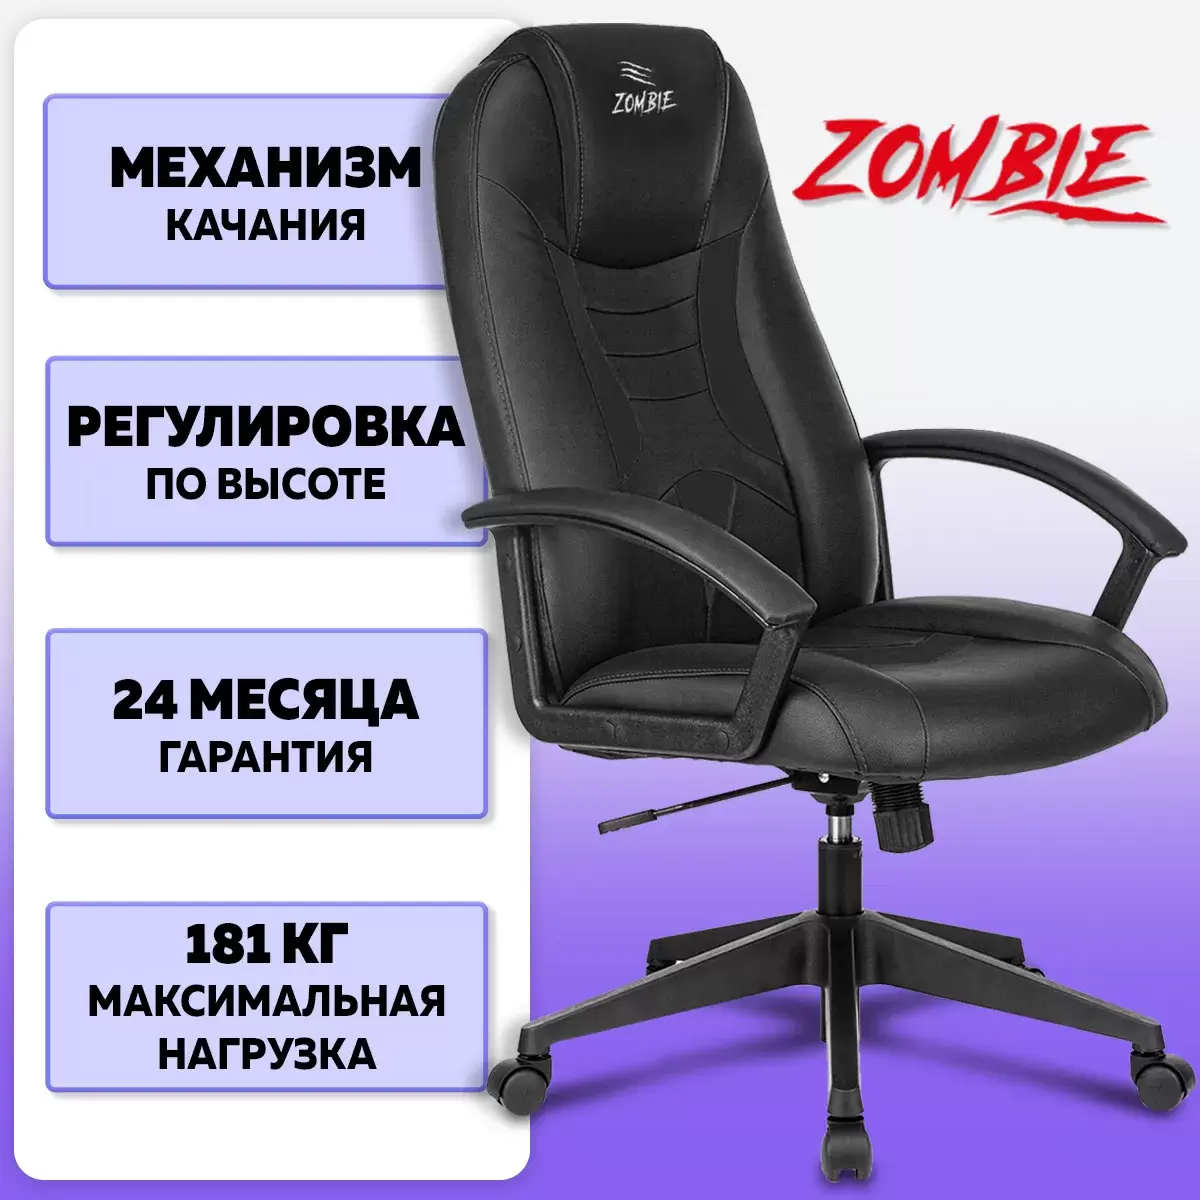 Игровое кресло ZOMBIE Viking-8/BLACK, черный 